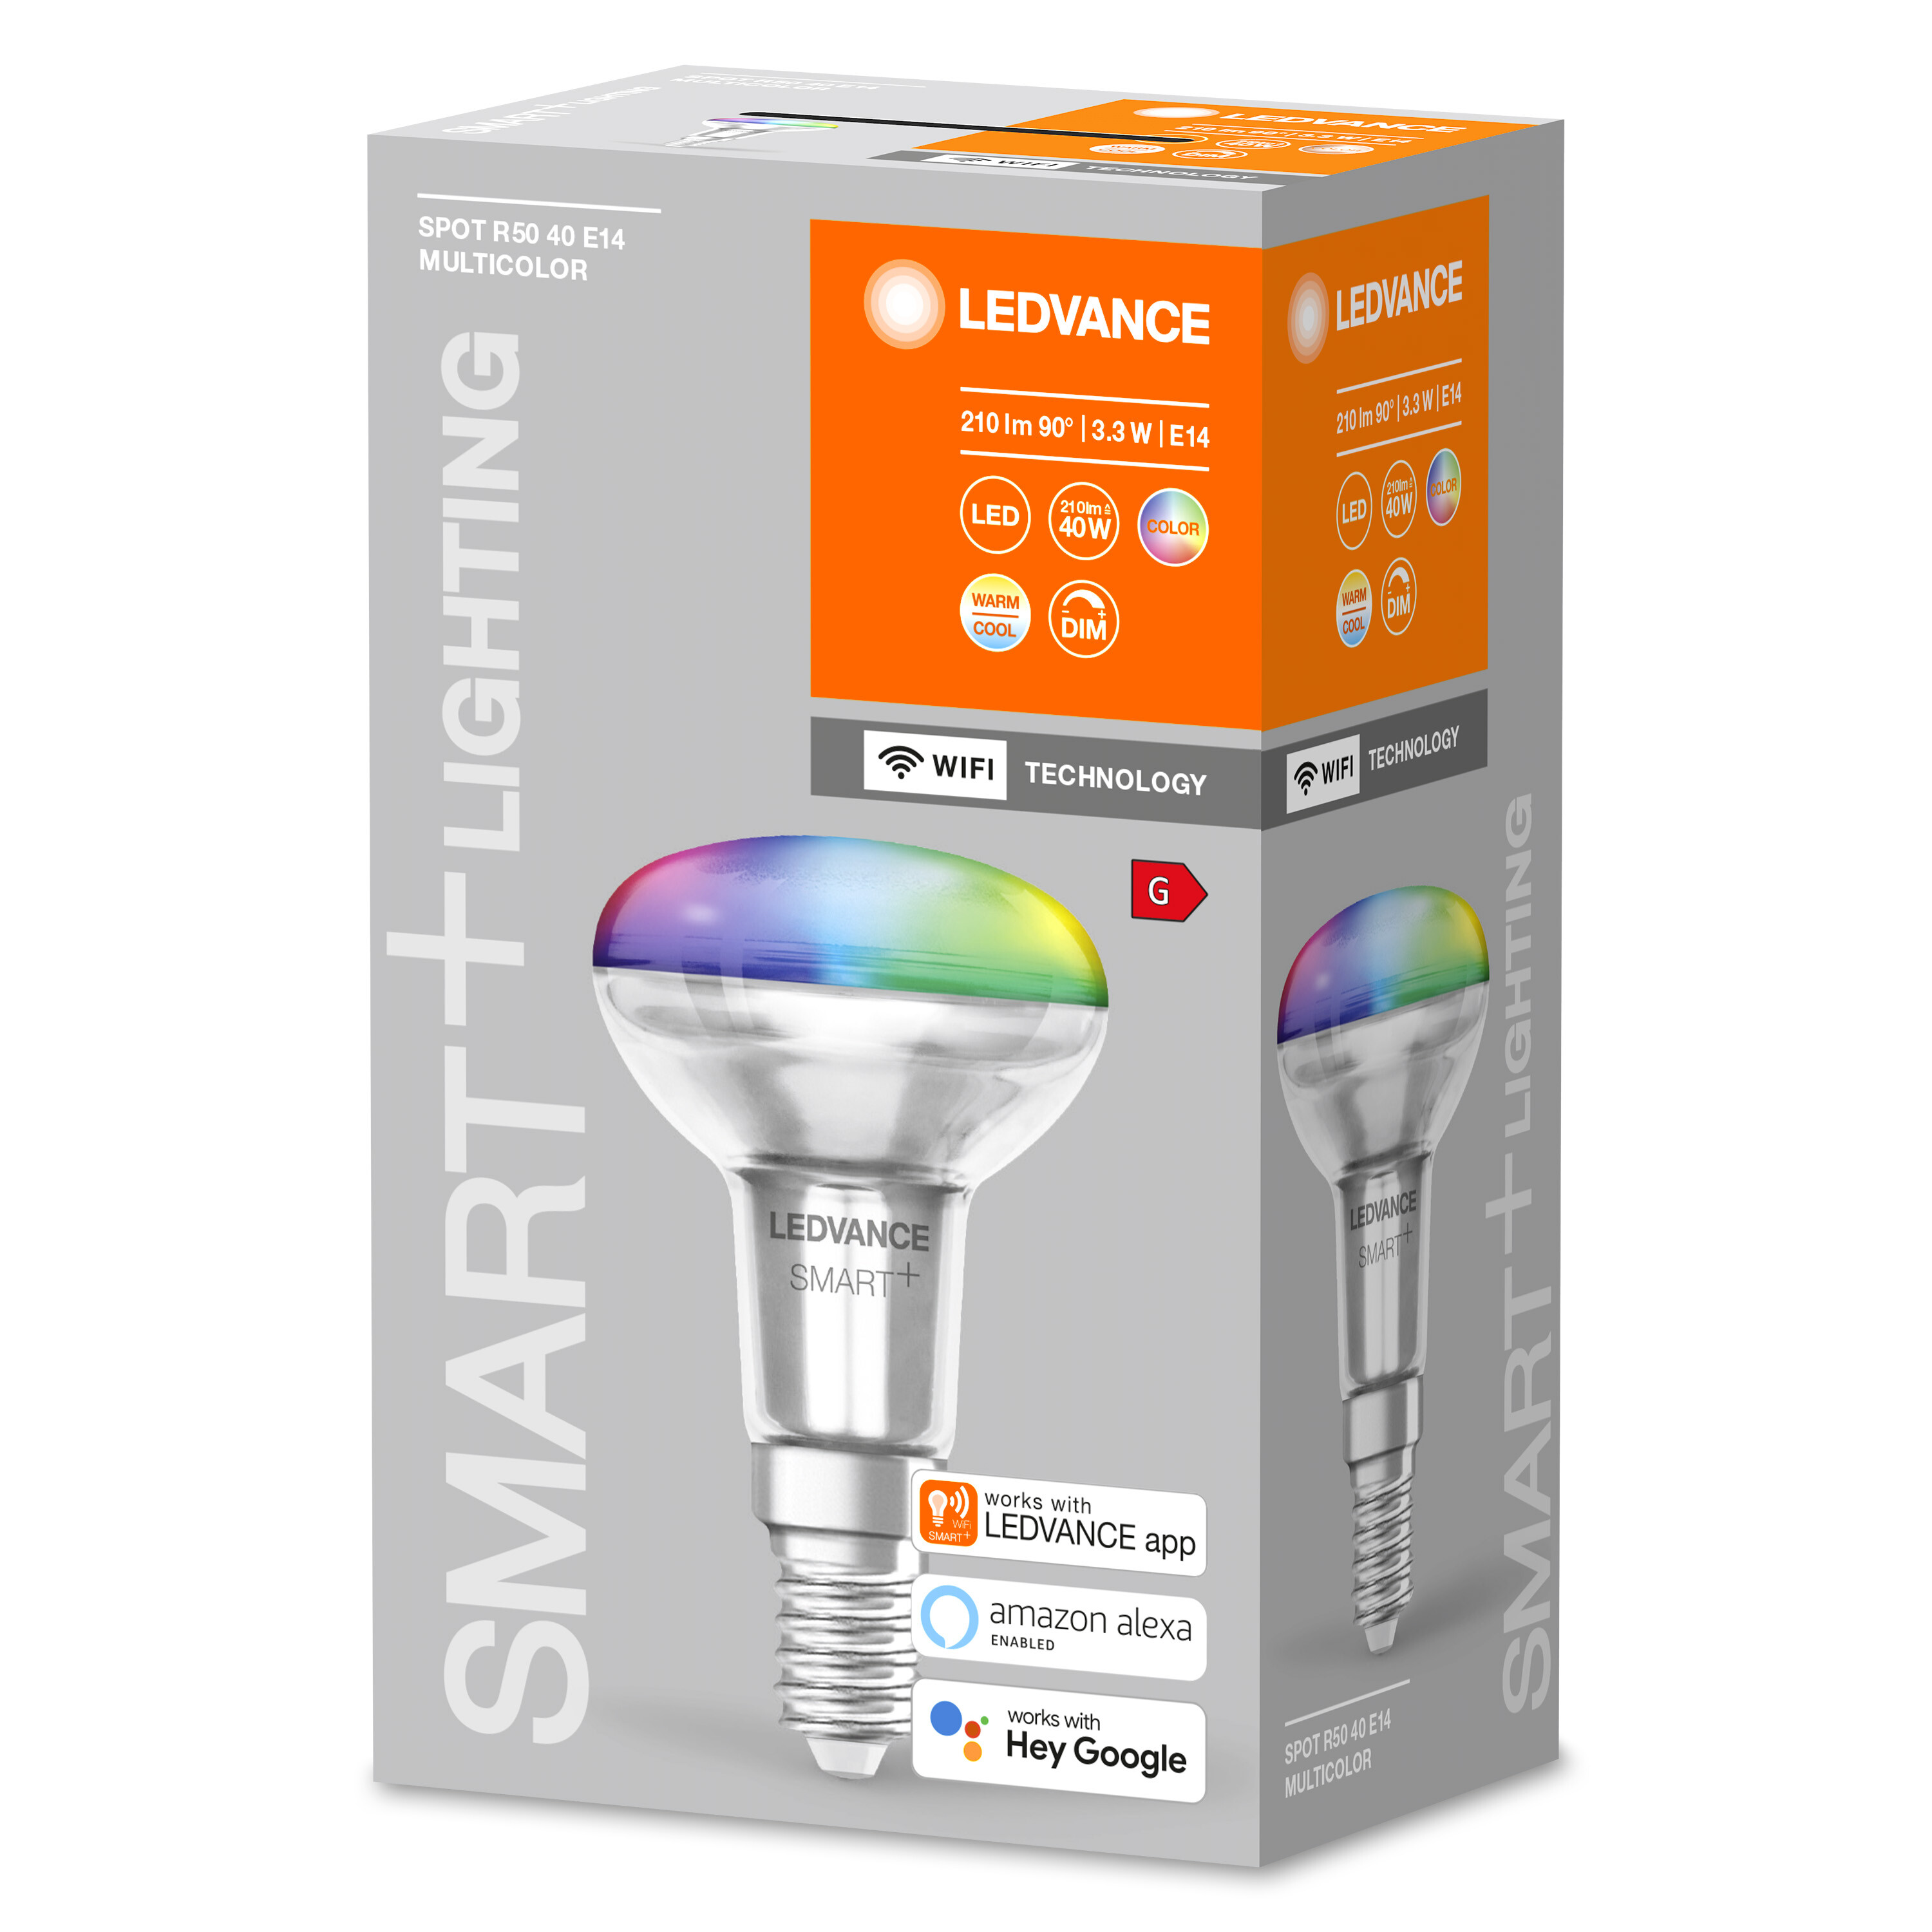 LEDVANCE SMART+ SPOT CONCENTRA R50 LED 40 3W Multicolor E14 änderbar Lampe Lichtfarbe Multicolor